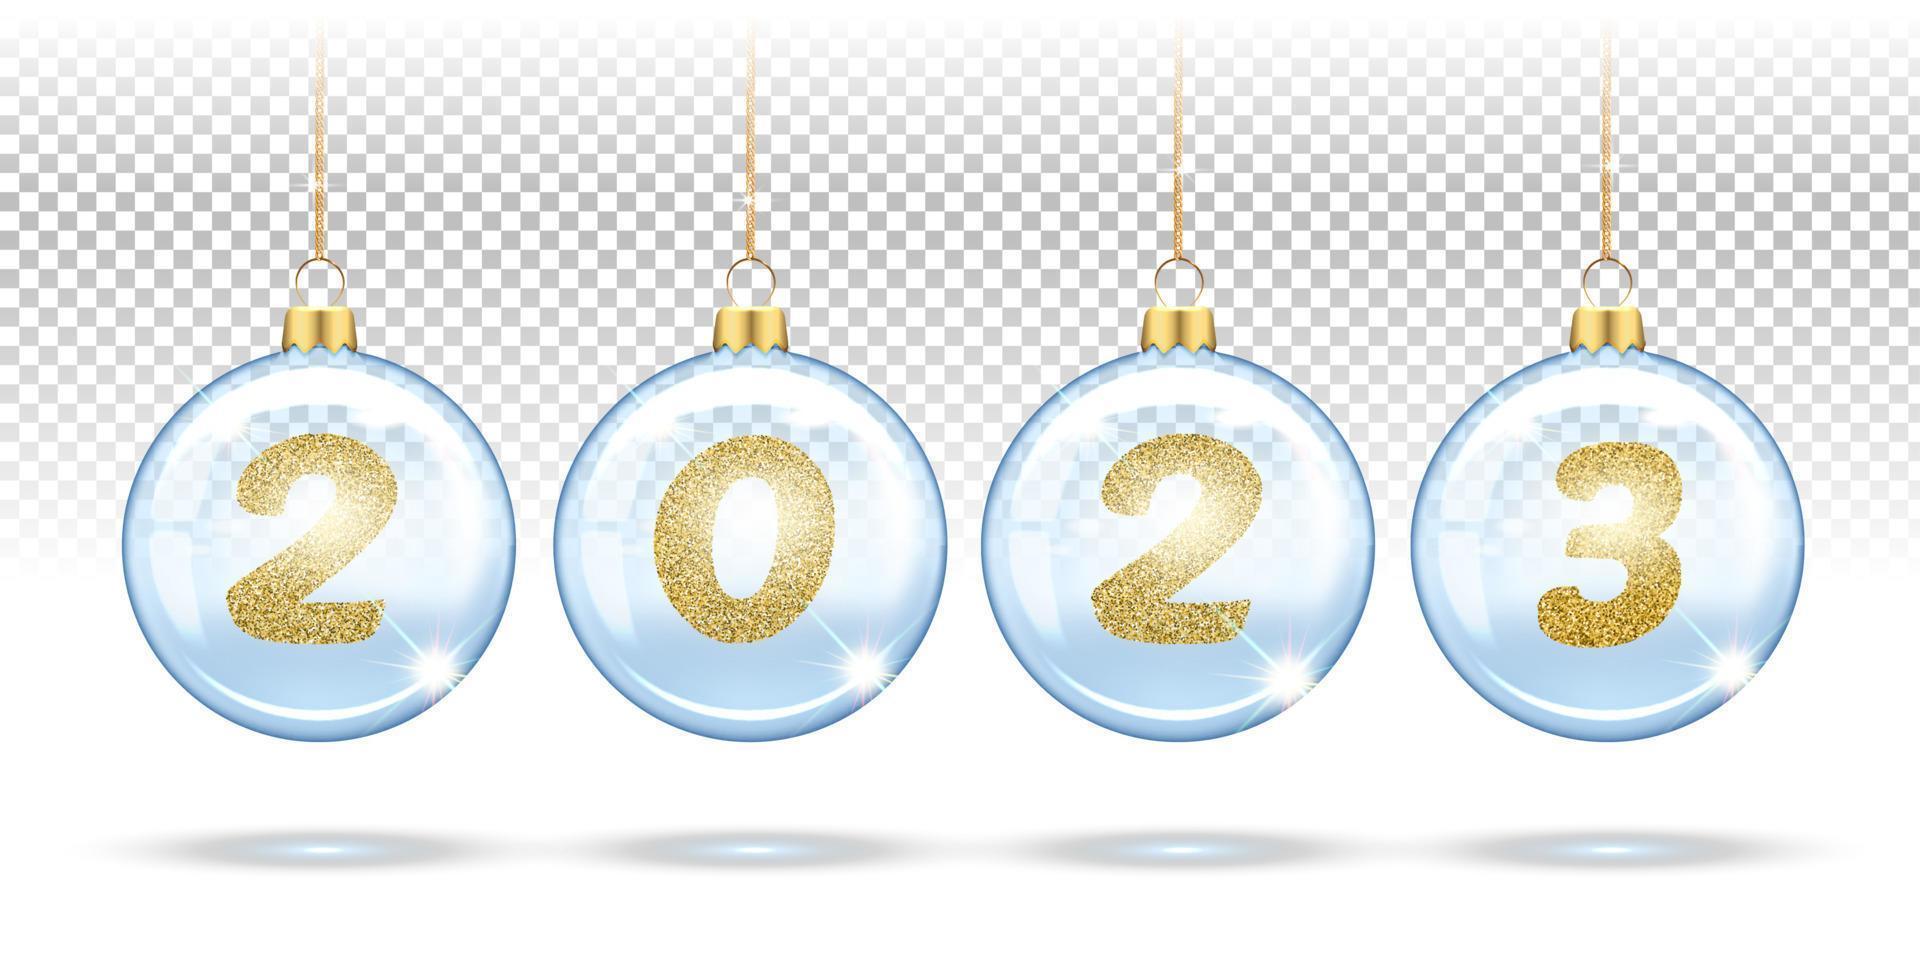 números 2023 de lantejoulas douradas em bolas transparentes de natal, enfeites de árvore de natal. layout festivo de banners, cartazes, cartões para o ano novo. 3d realista em um fundo branco vetor